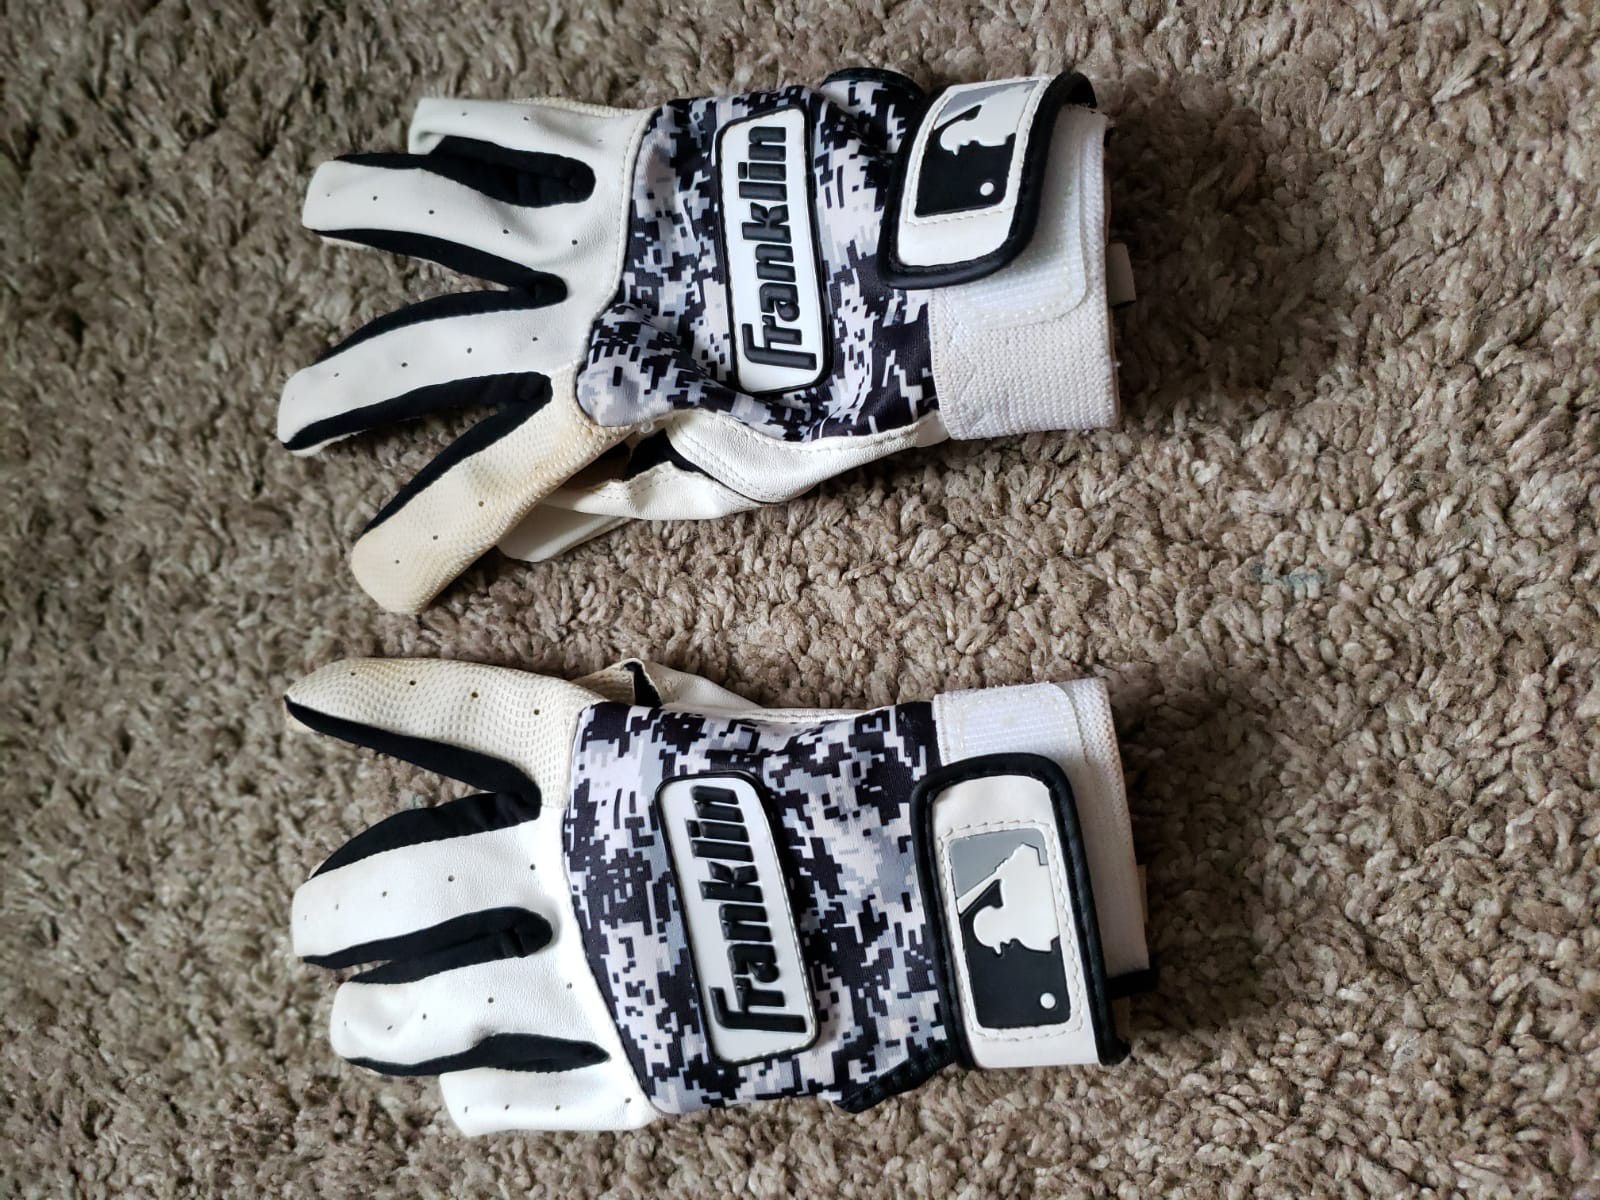 Baseball gloves and bat